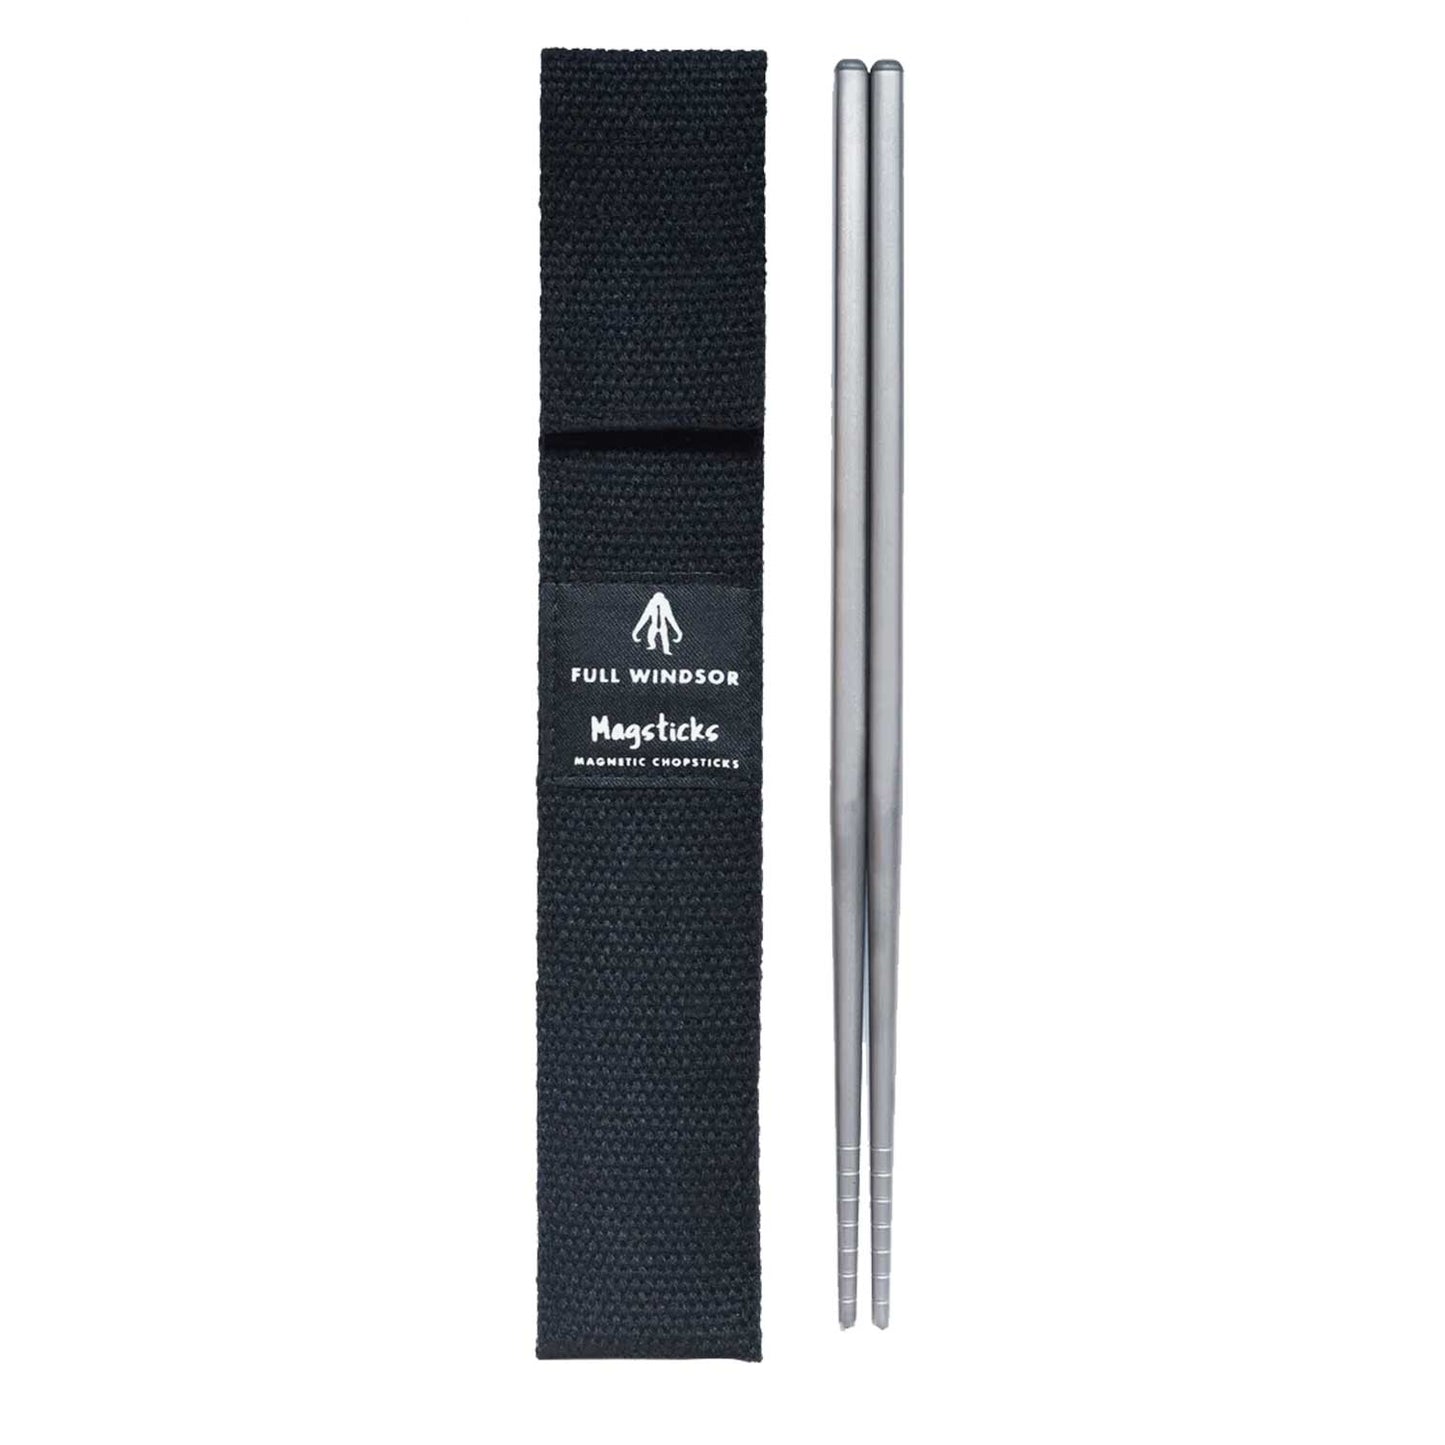 Full Windsor magnetic chopsticks 釱磁筷子